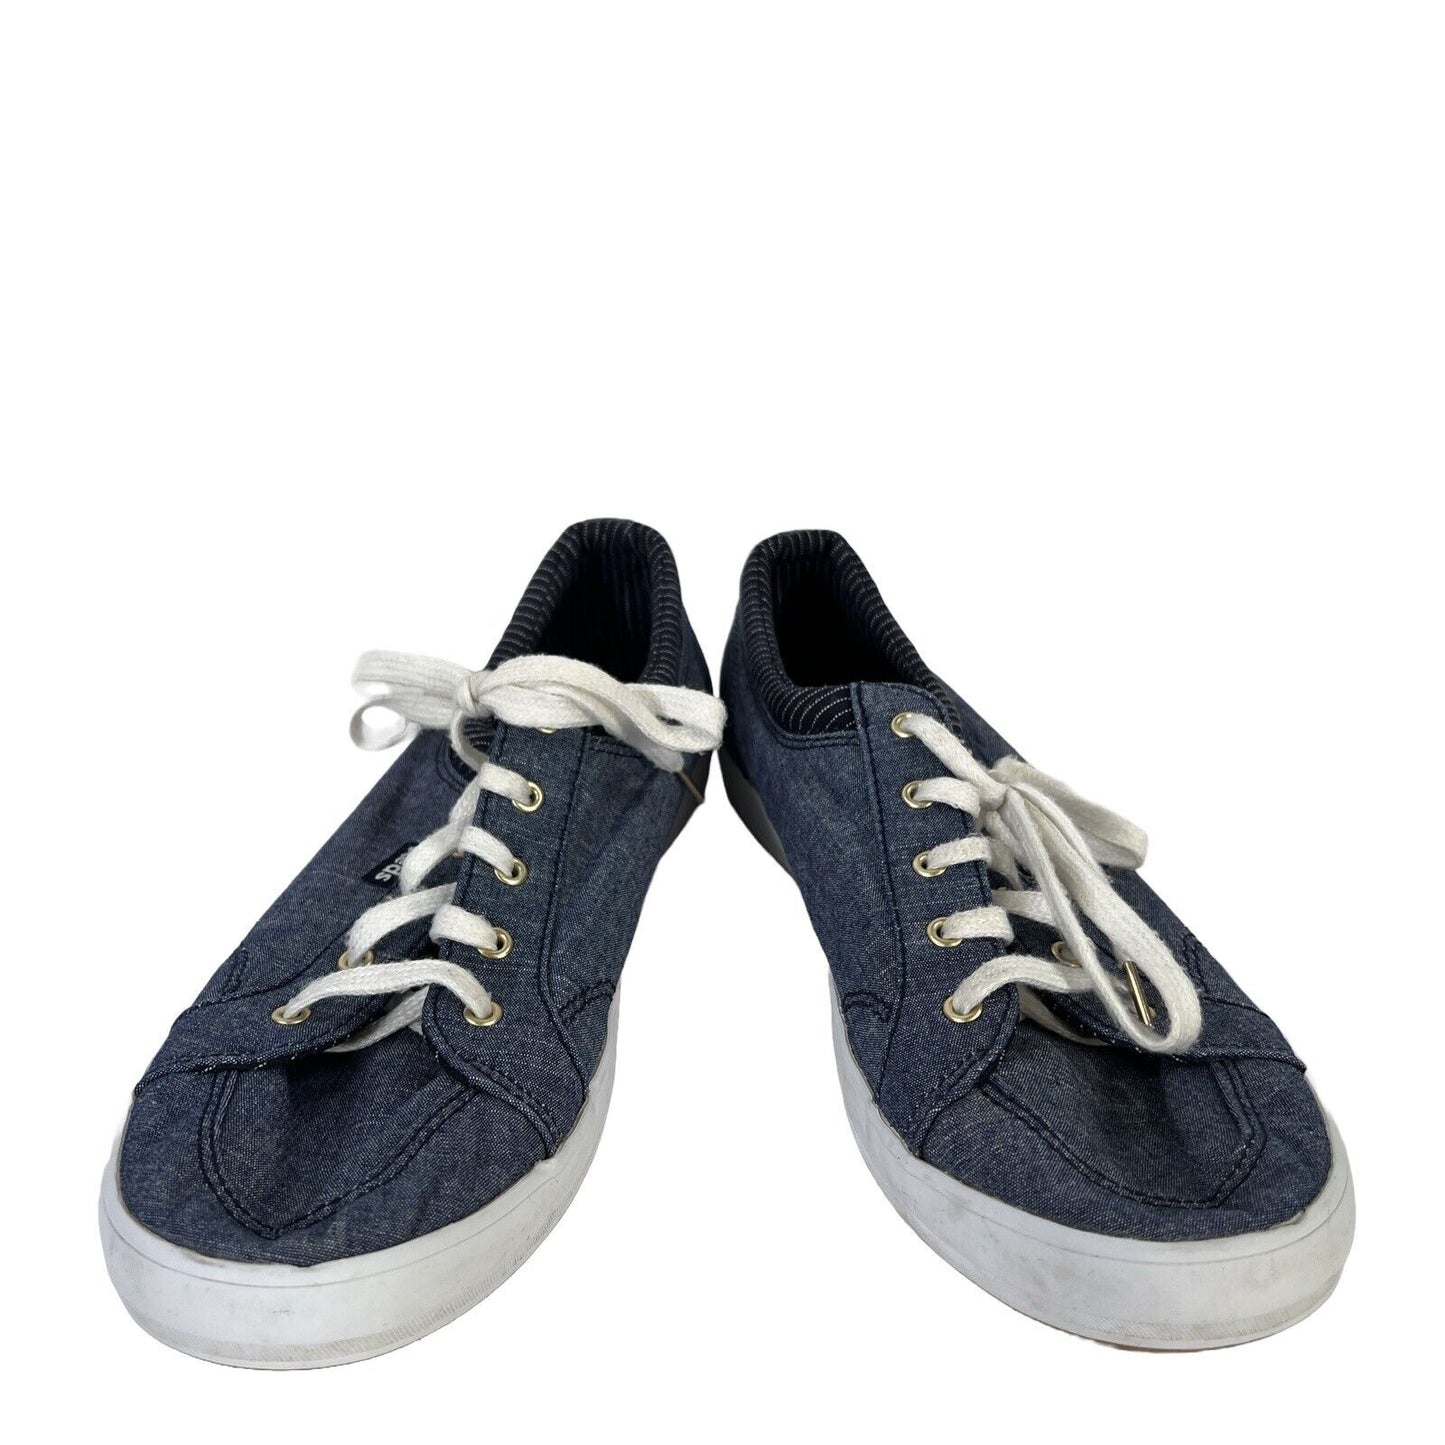 Keds Zapatillas bajas con cordones para mujer, color azul, 9,5